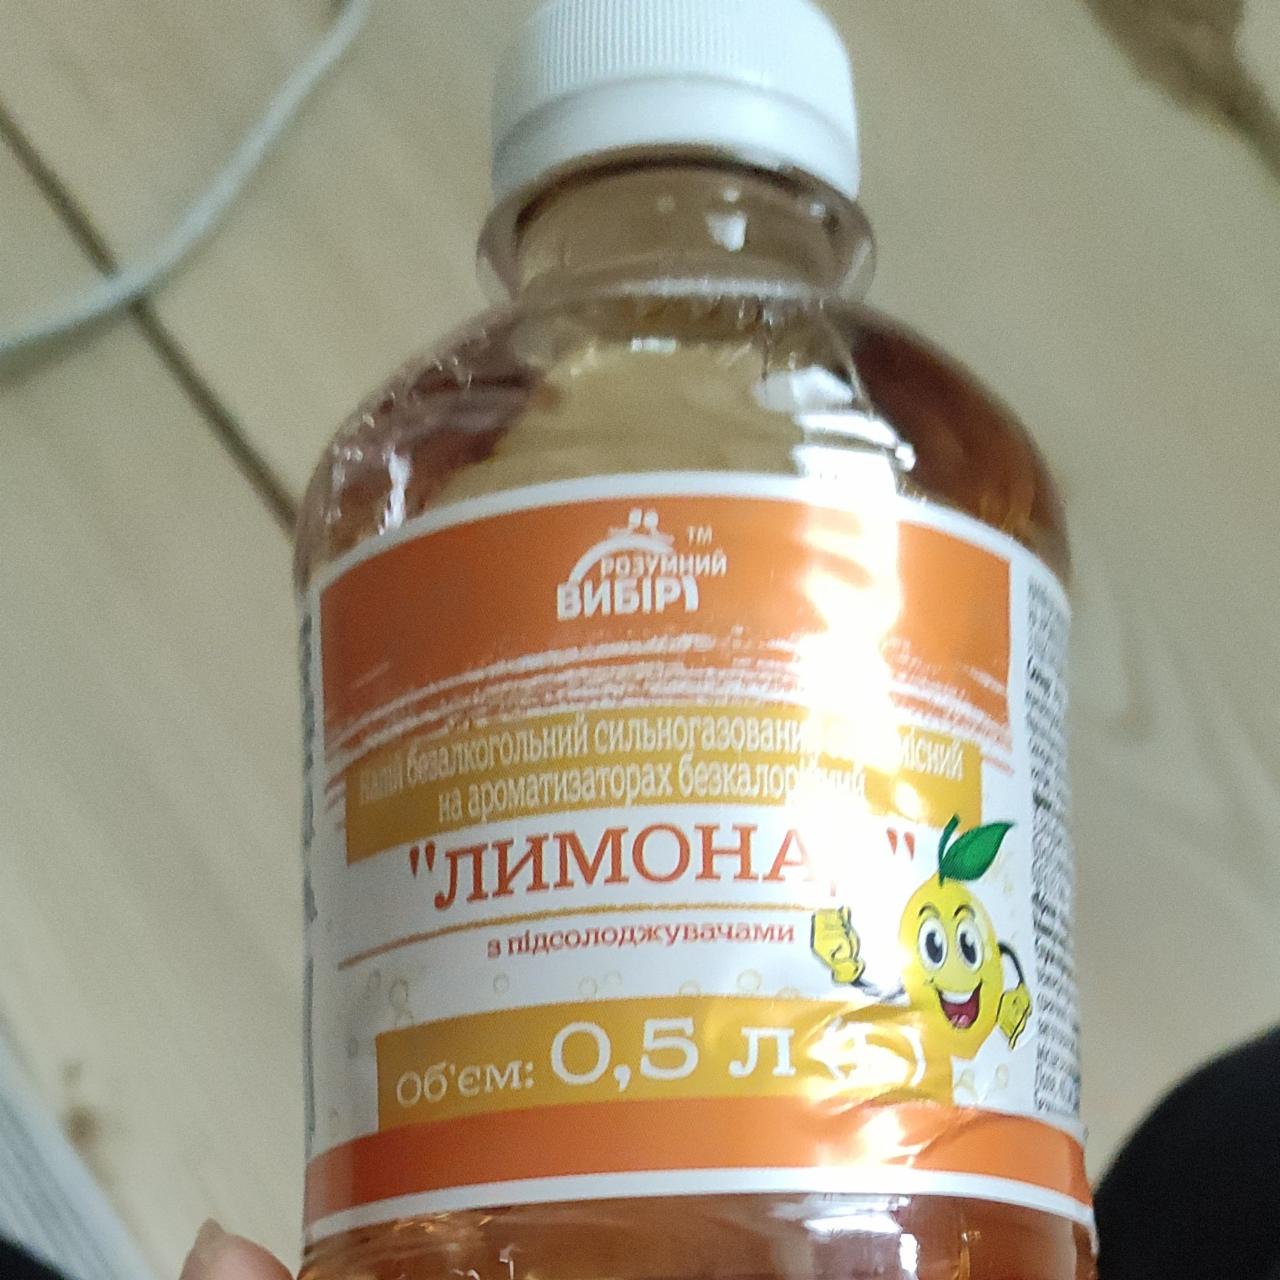 Фото - Напій безалкогольний сильногазований на ароматизаторах безакалорійний Лимонад Своя Лінія